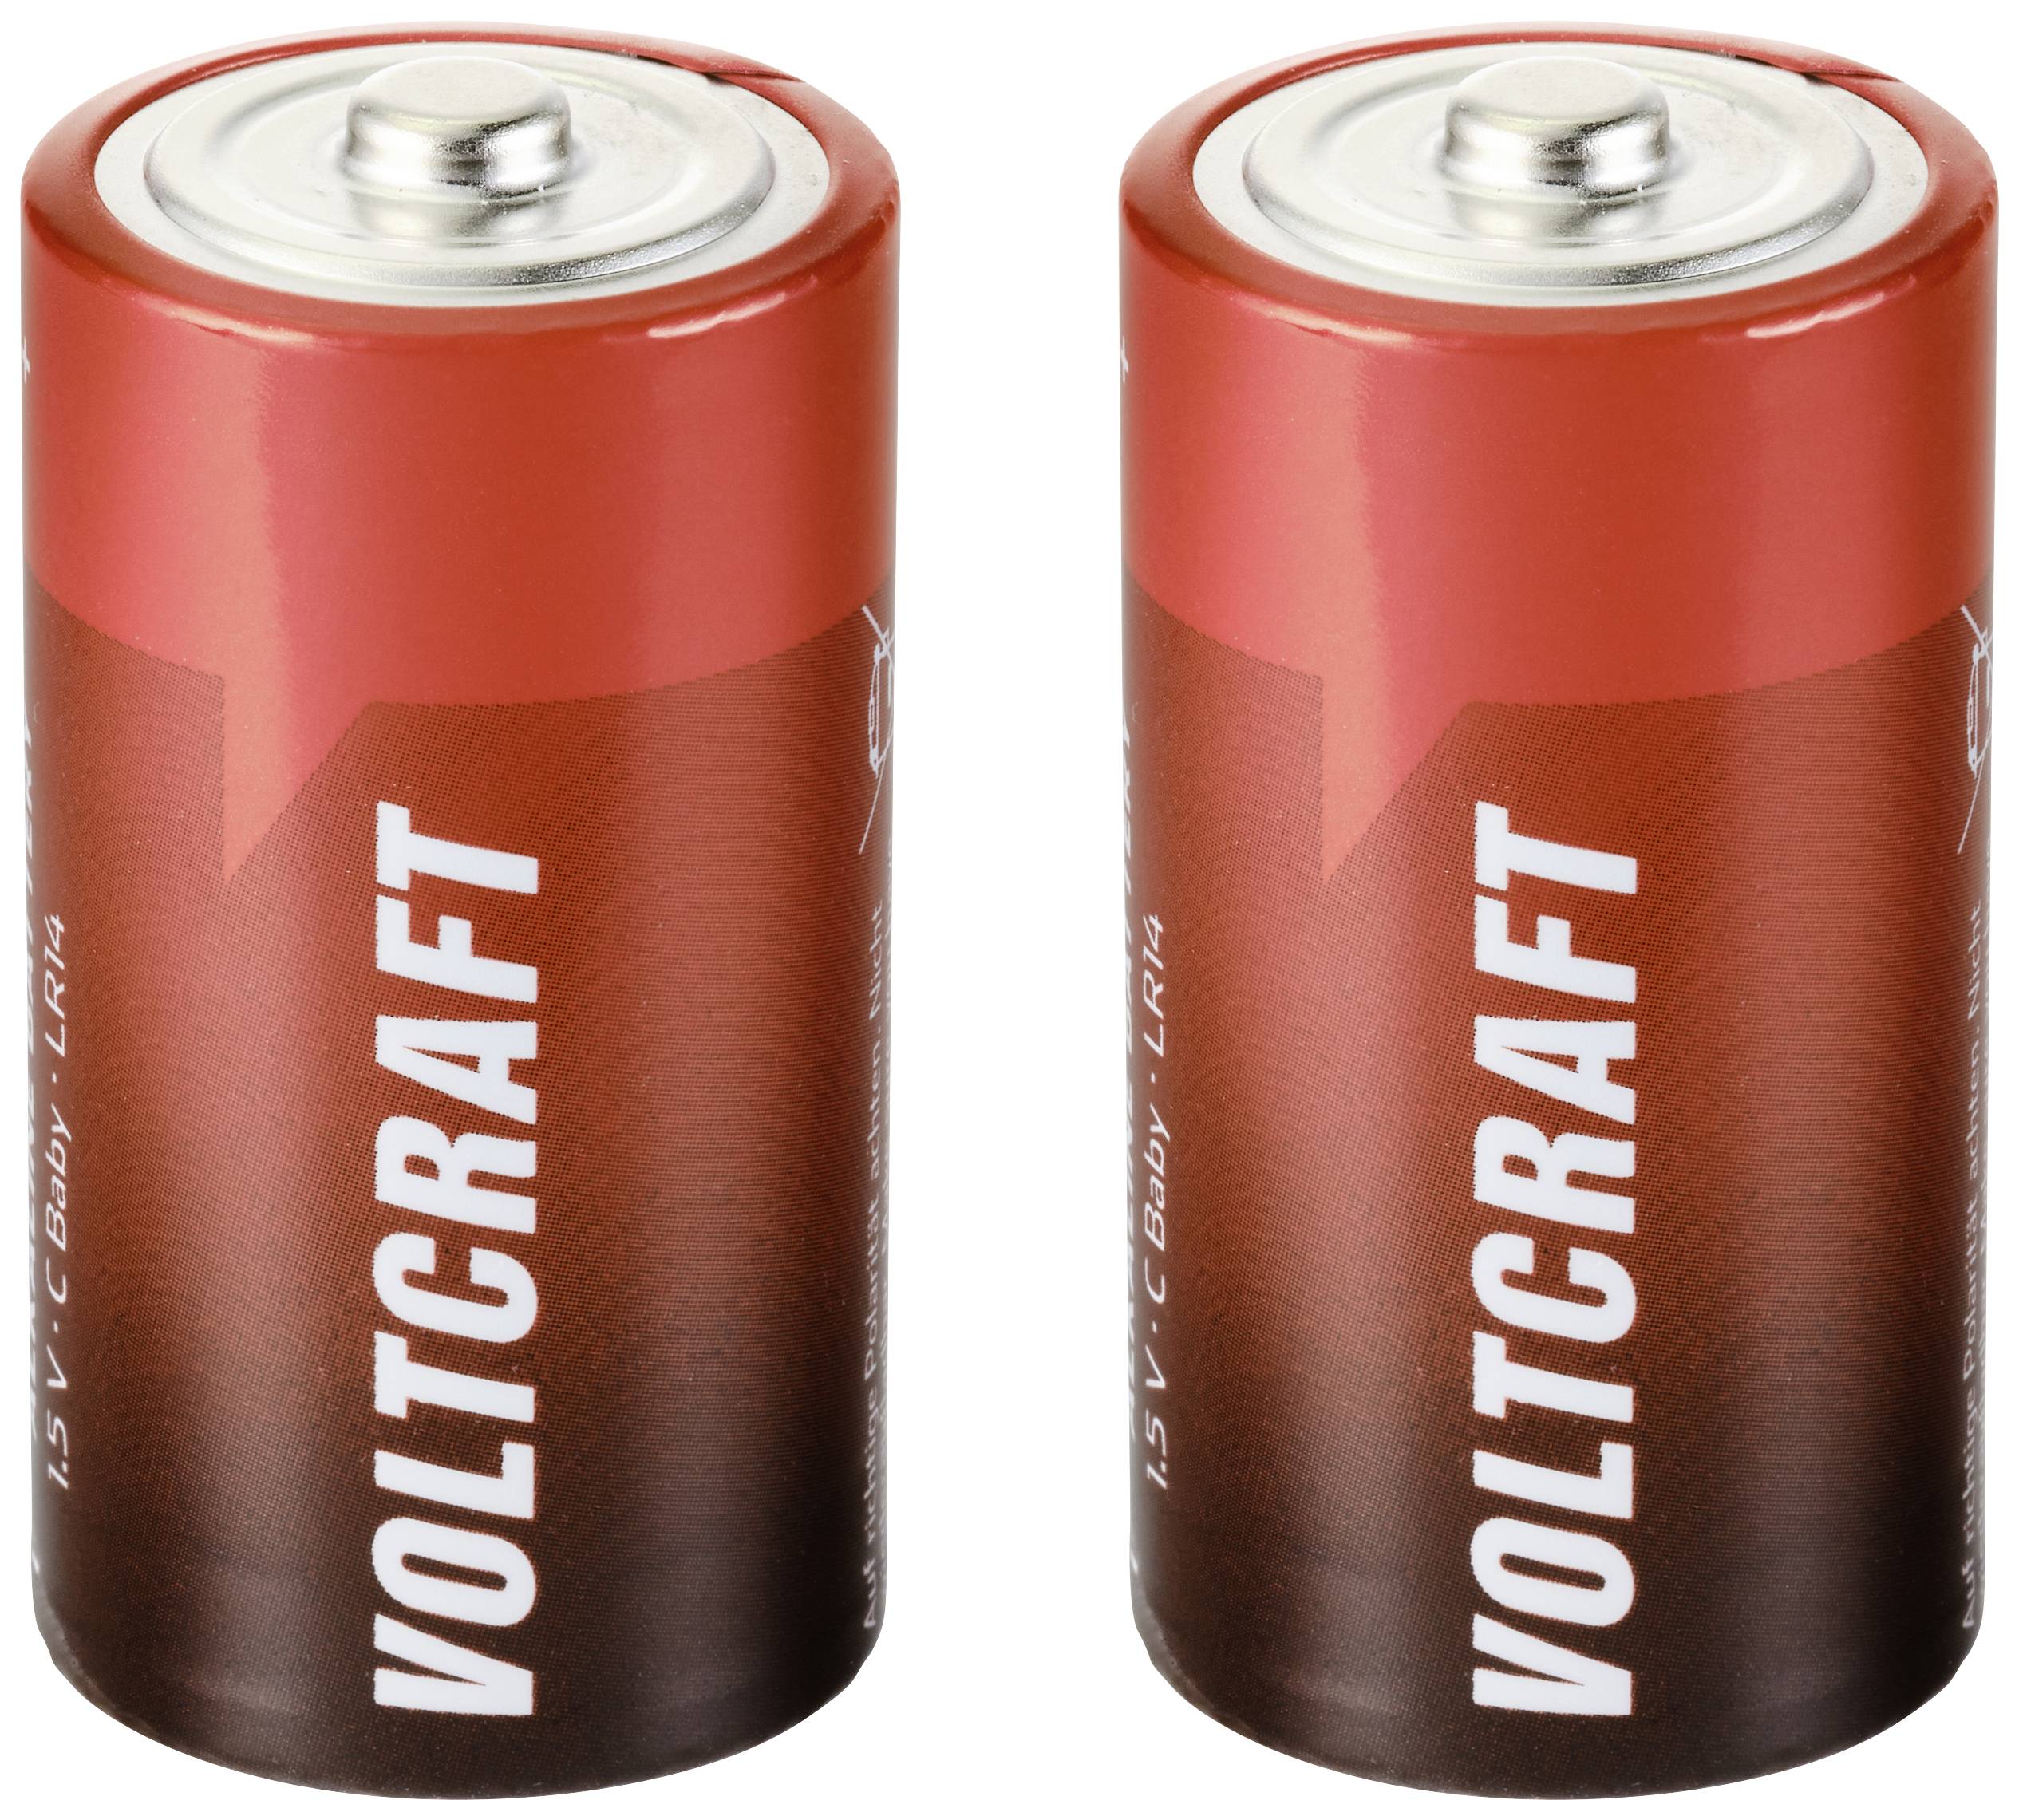 Personlig privat omhyggelig C-batteri R14 VOLTCRAFT Industrial LR14 Alkali-mangan 1.5 V 7500 mAh 2 stk  købe